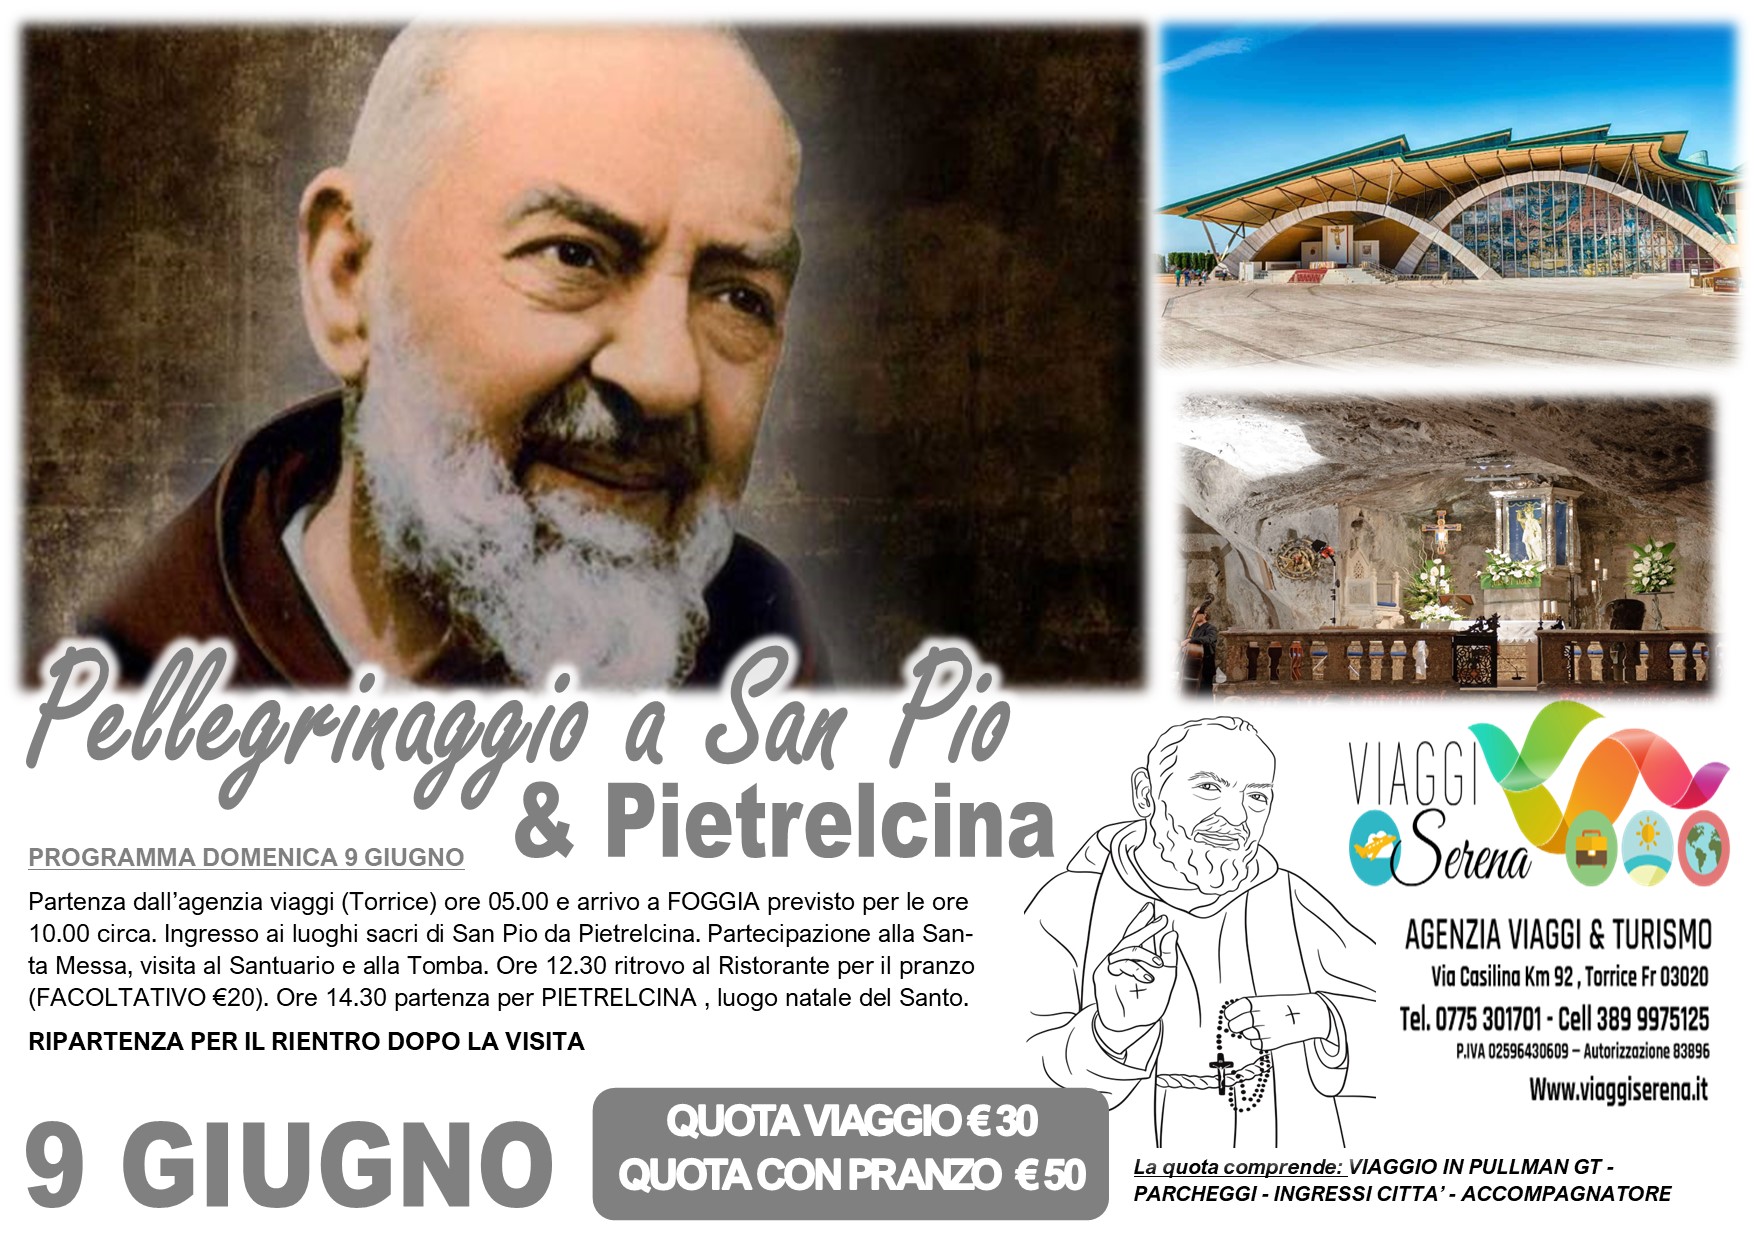 Viaggi di gruppo: Pellegrinaggio San Pio da Pietrelcina & Pietrelcina 9 Giugno €30,00